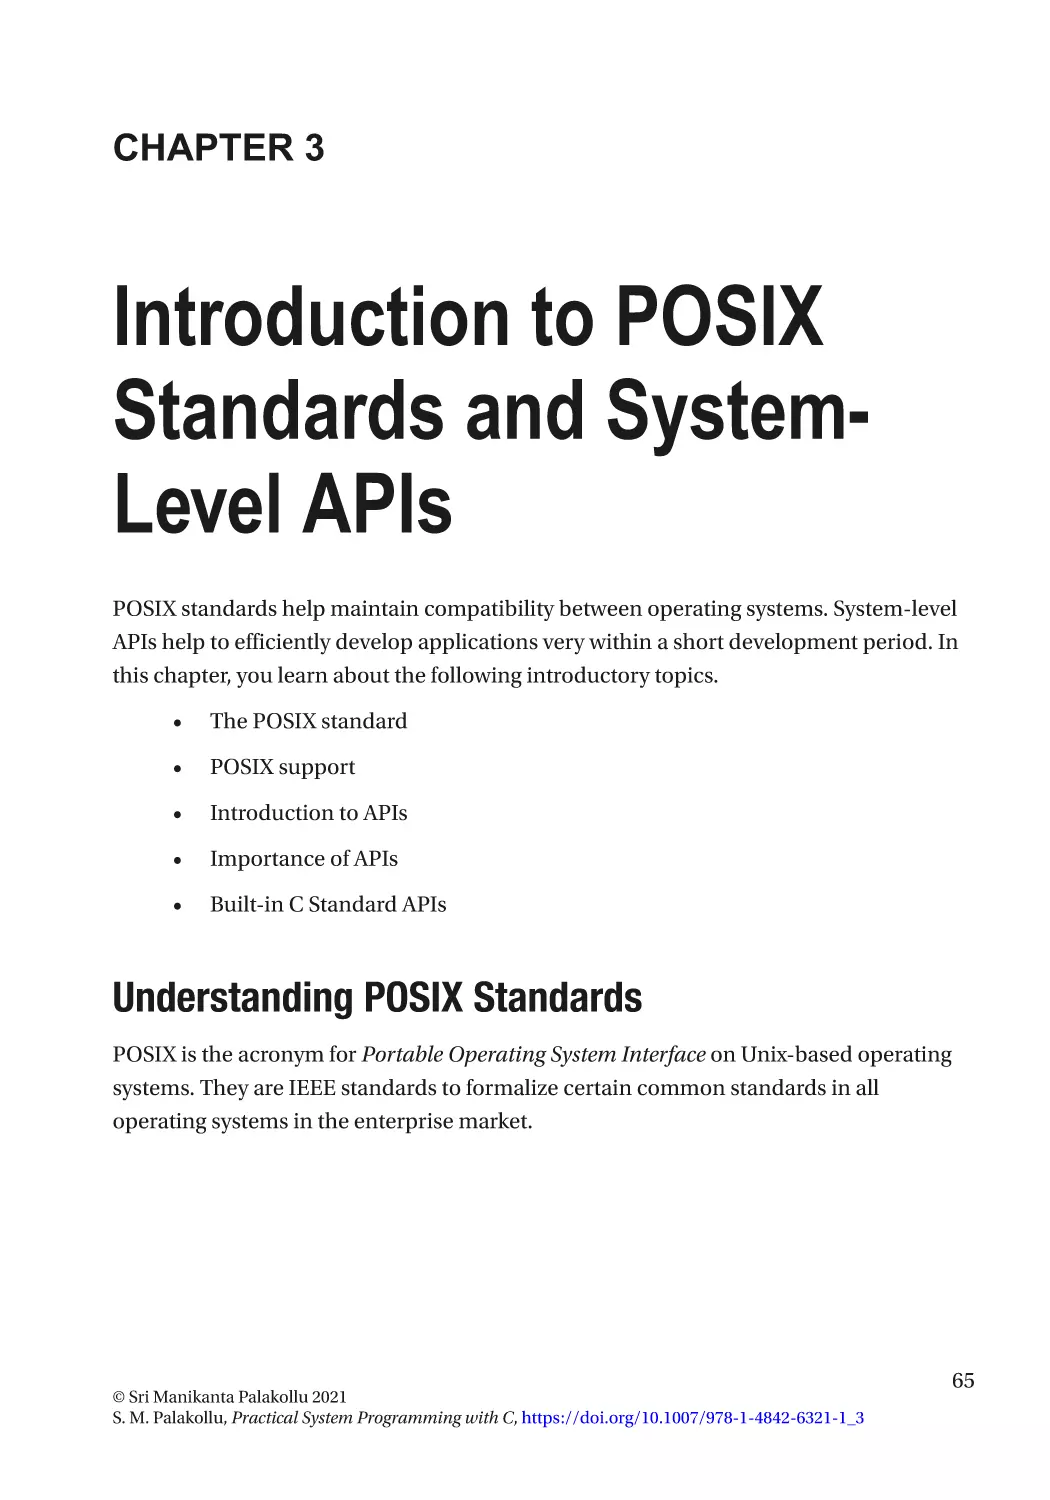 Chapter 3
Understanding POSIX Standards